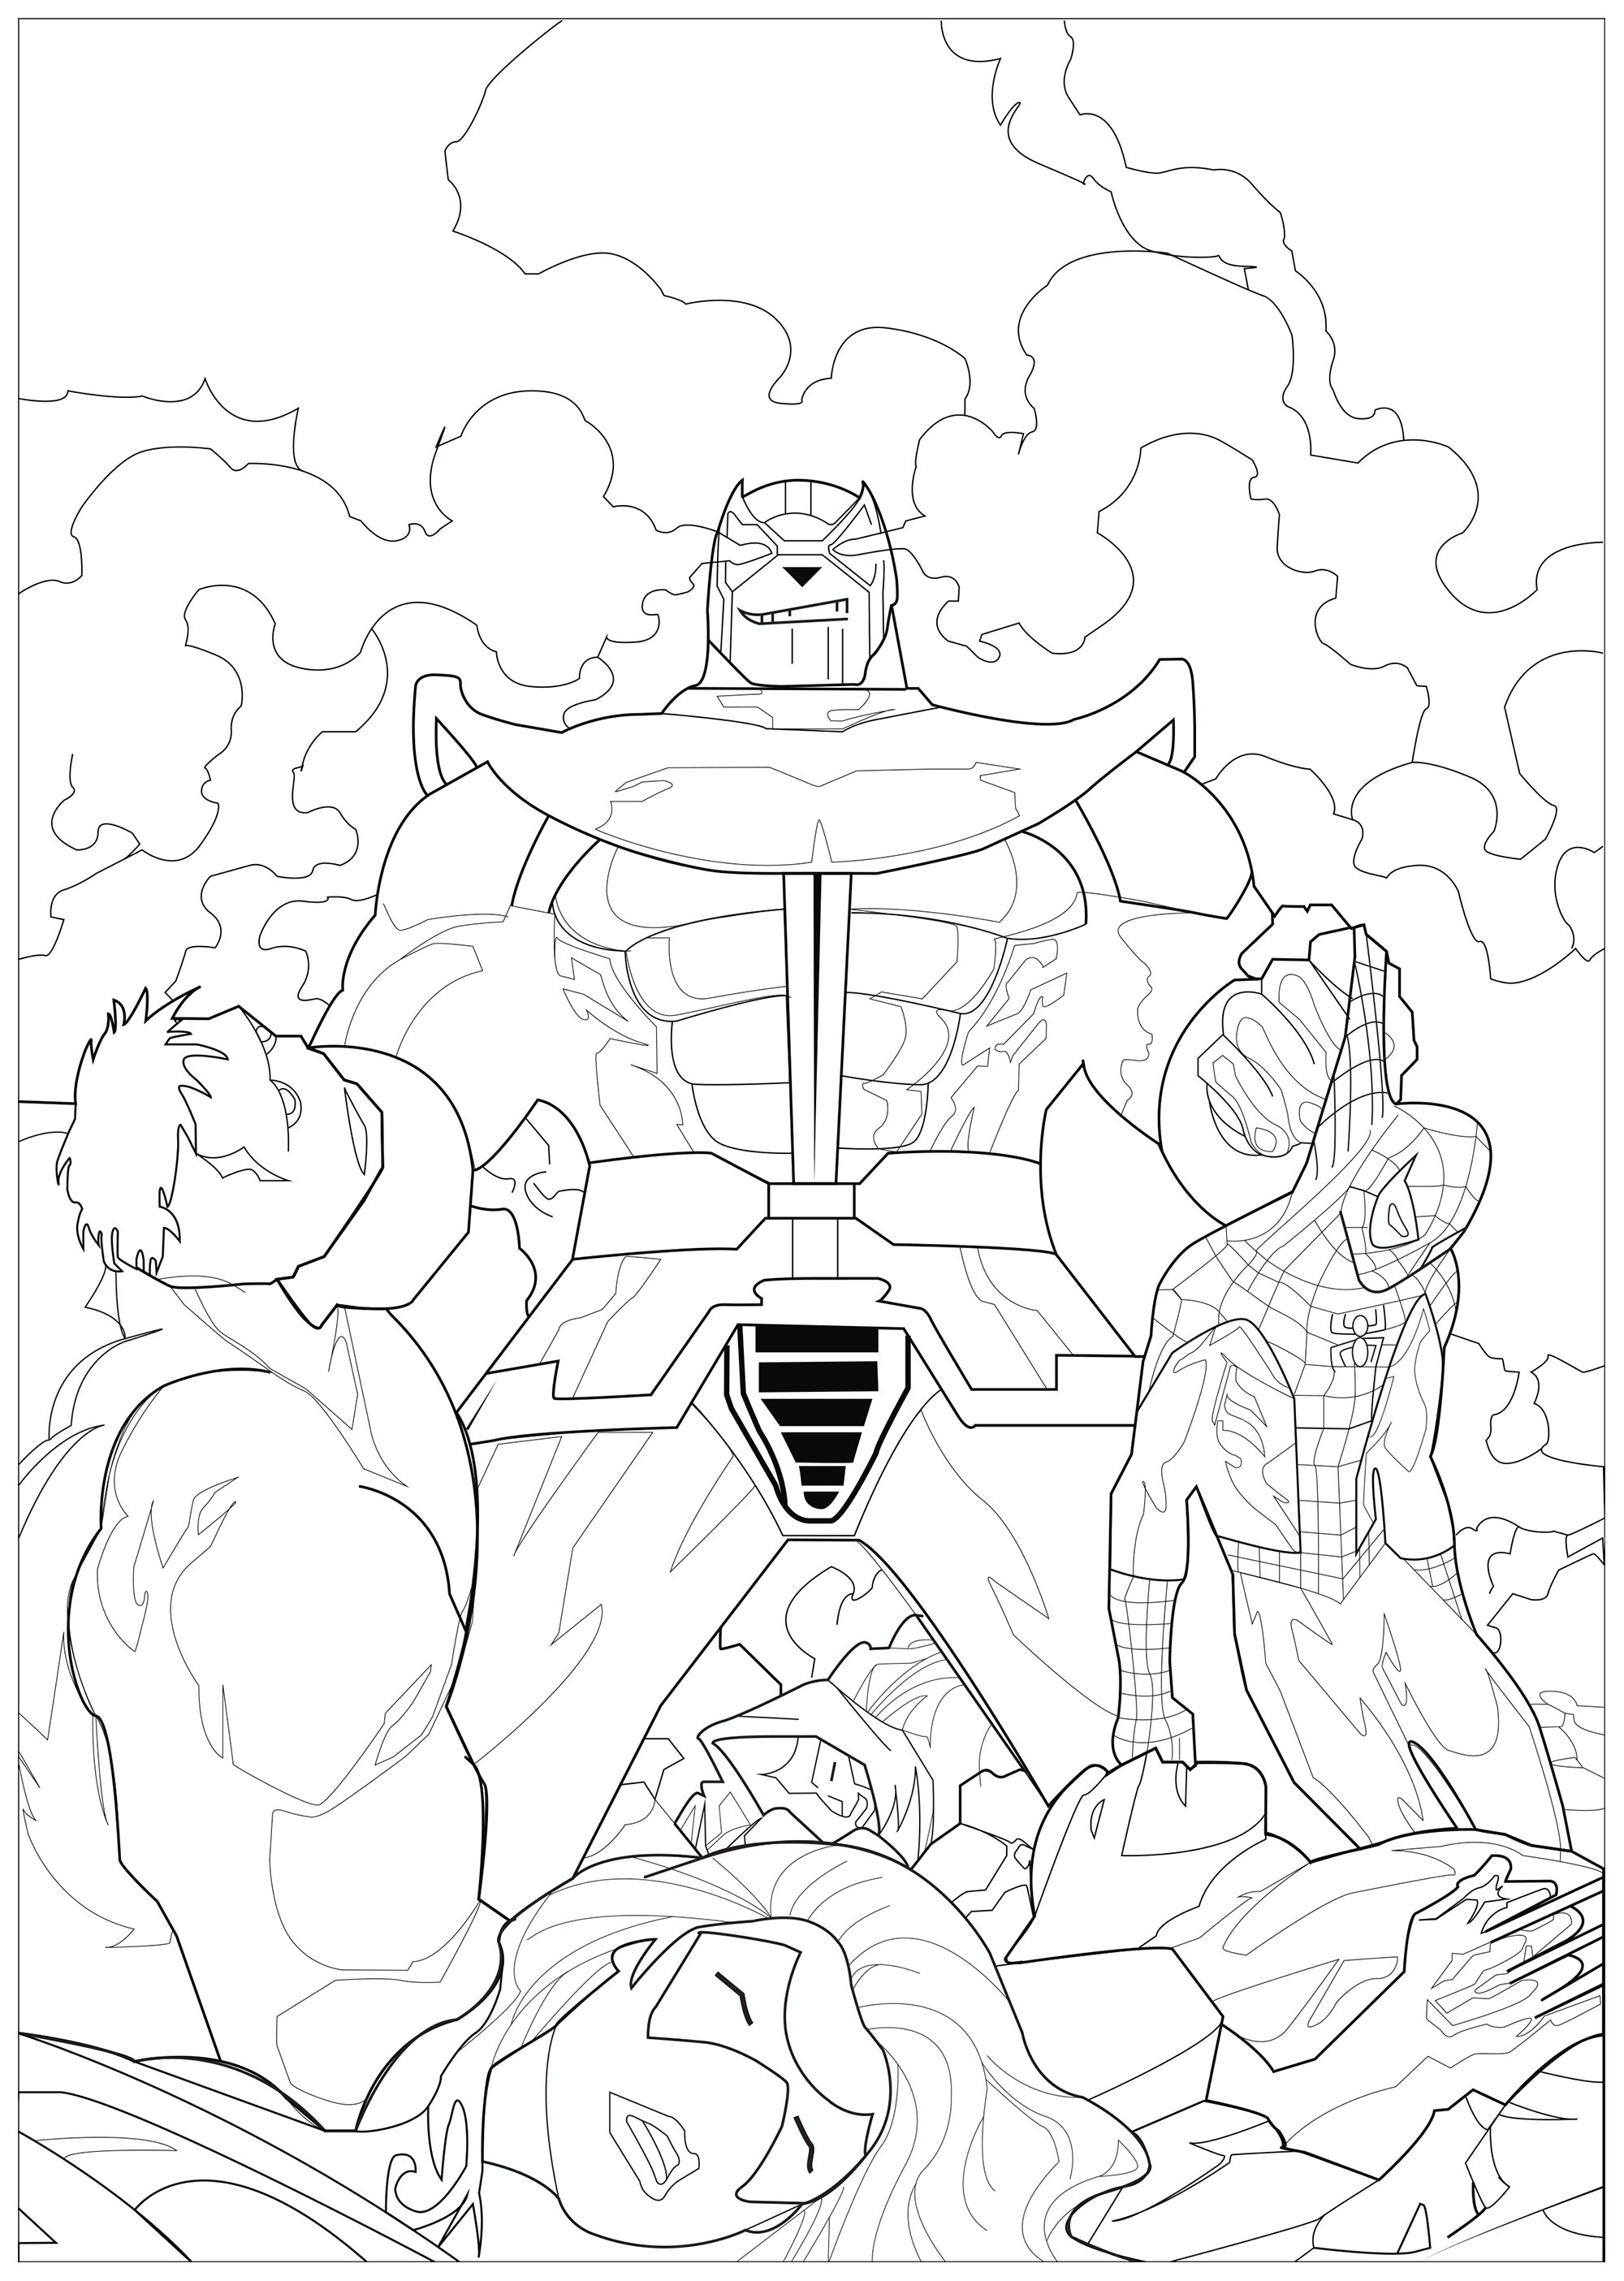 Thanos con i corpi dei Vendicatori che ha ucciso: Hulk, Spiderman, Iron Man, Vedova Nera.